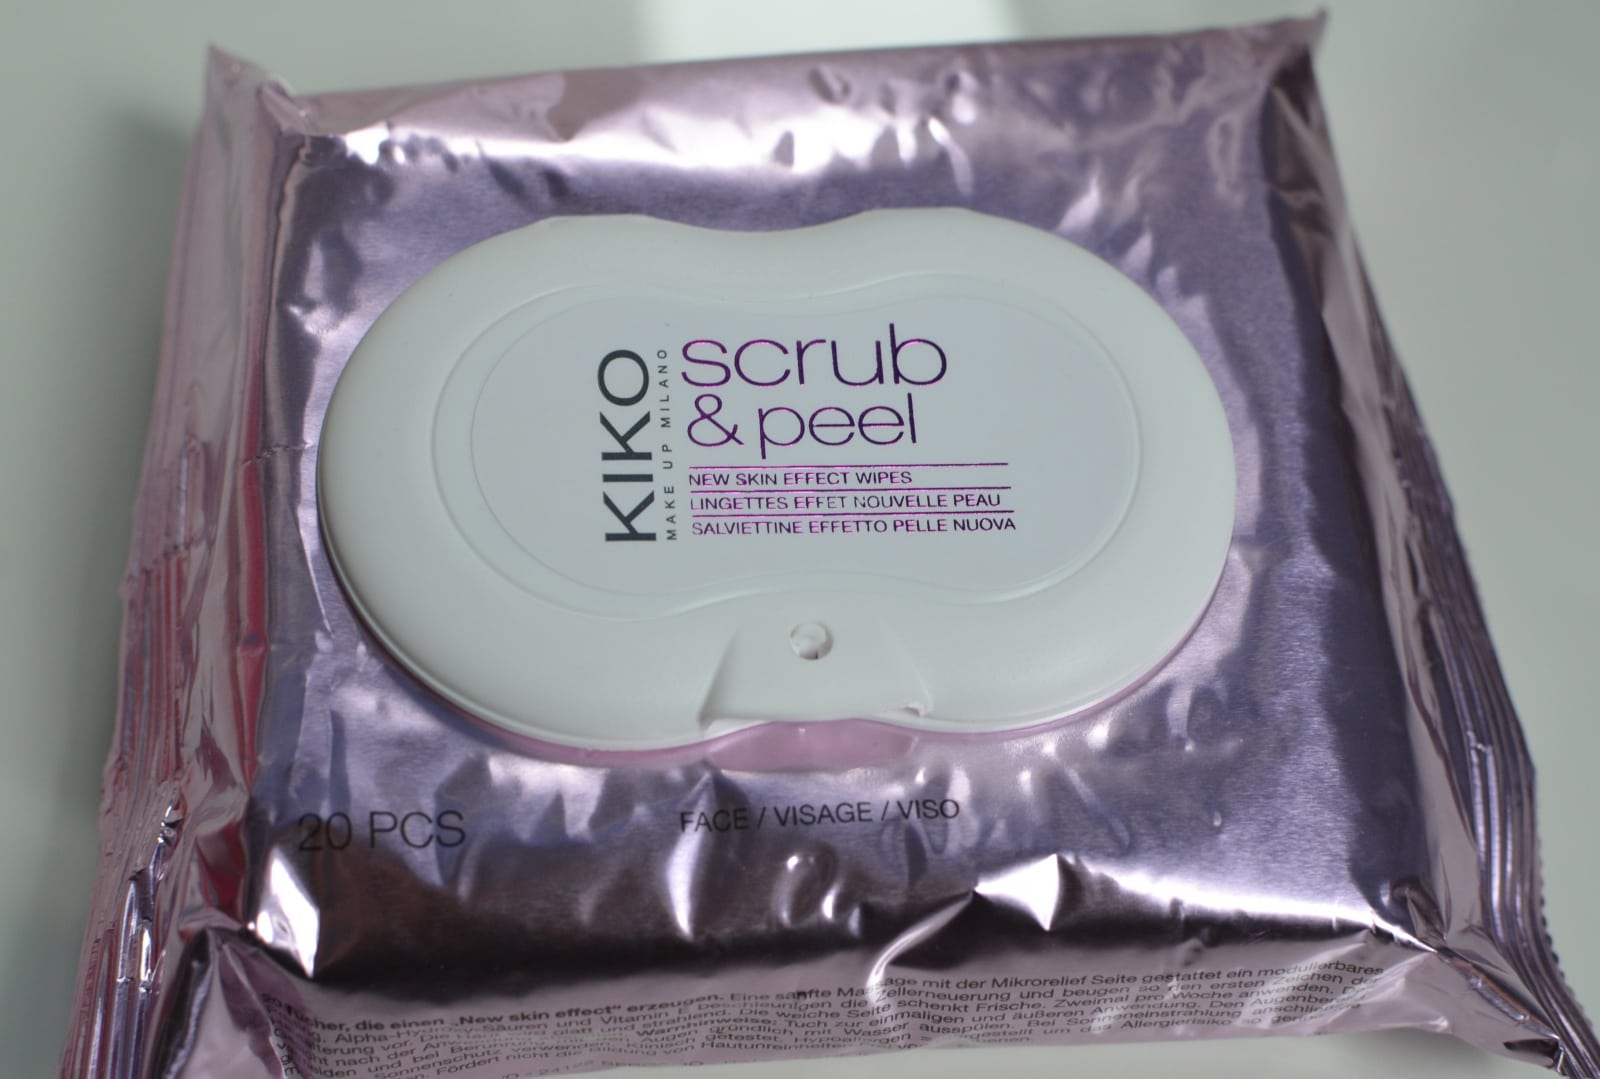 Exfolia tu piel con las toallitas Scrub & Peel de Kiko